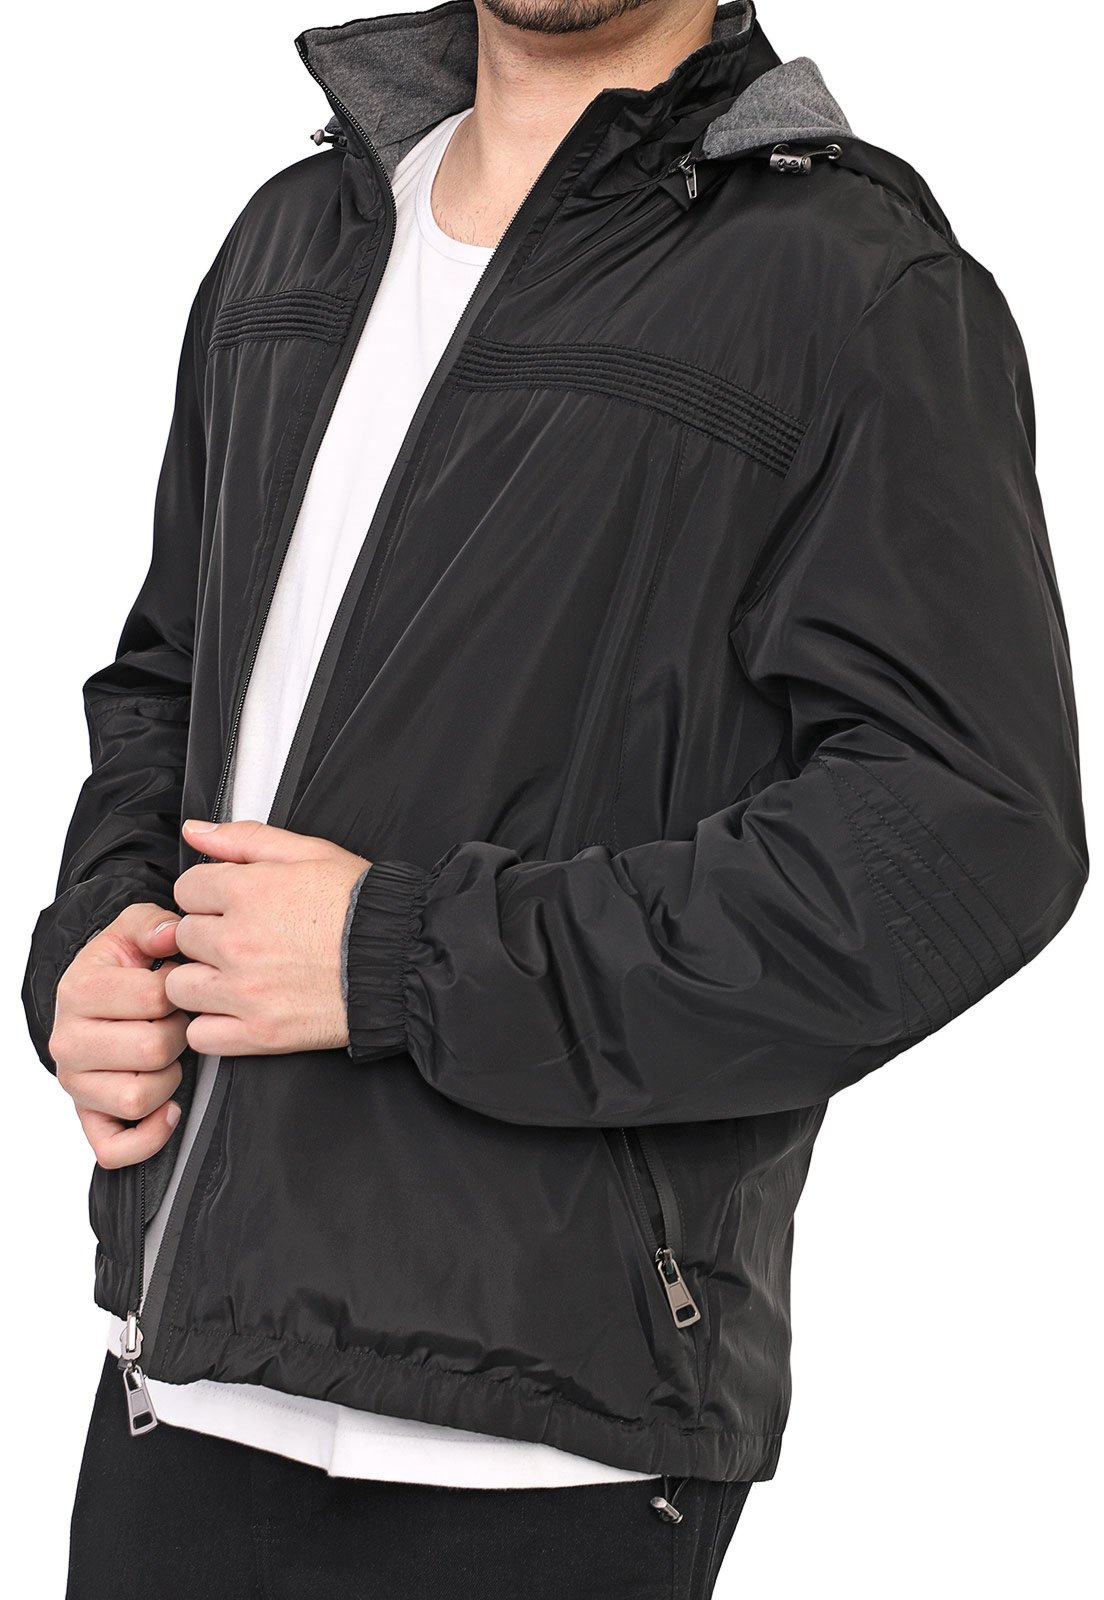 jaqueta preta com capuz cinza